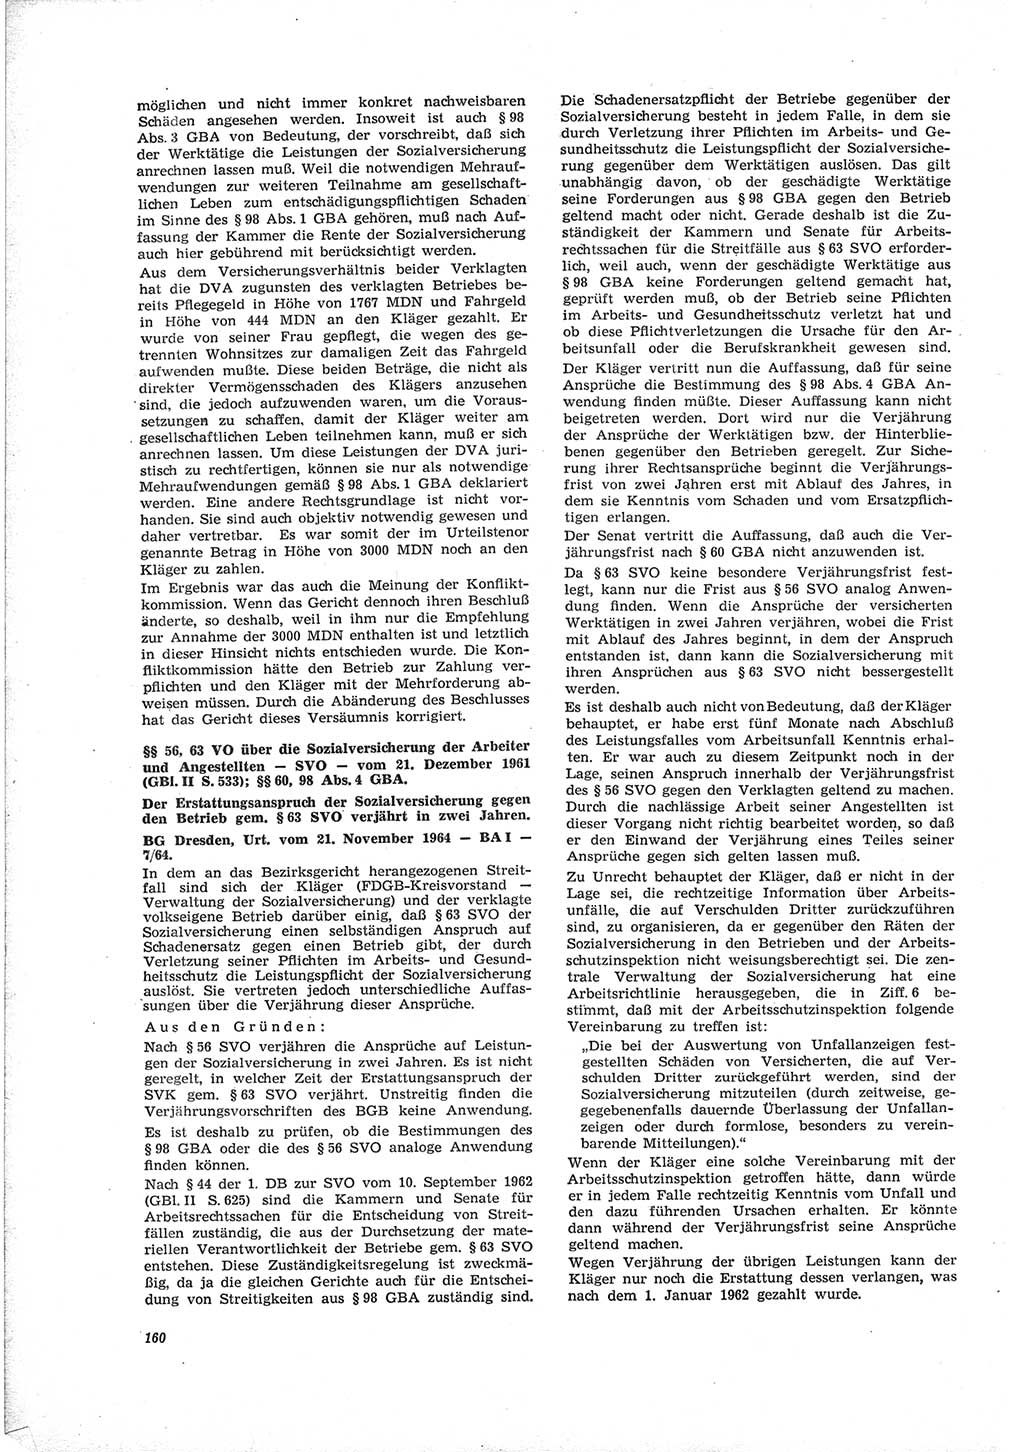 Neue Justiz (NJ), Zeitschrift für Recht und Rechtswissenschaft [Deutsche Demokratische Republik (DDR)], 19. Jahrgang 1965, Seite 160 (NJ DDR 1965, S. 160)